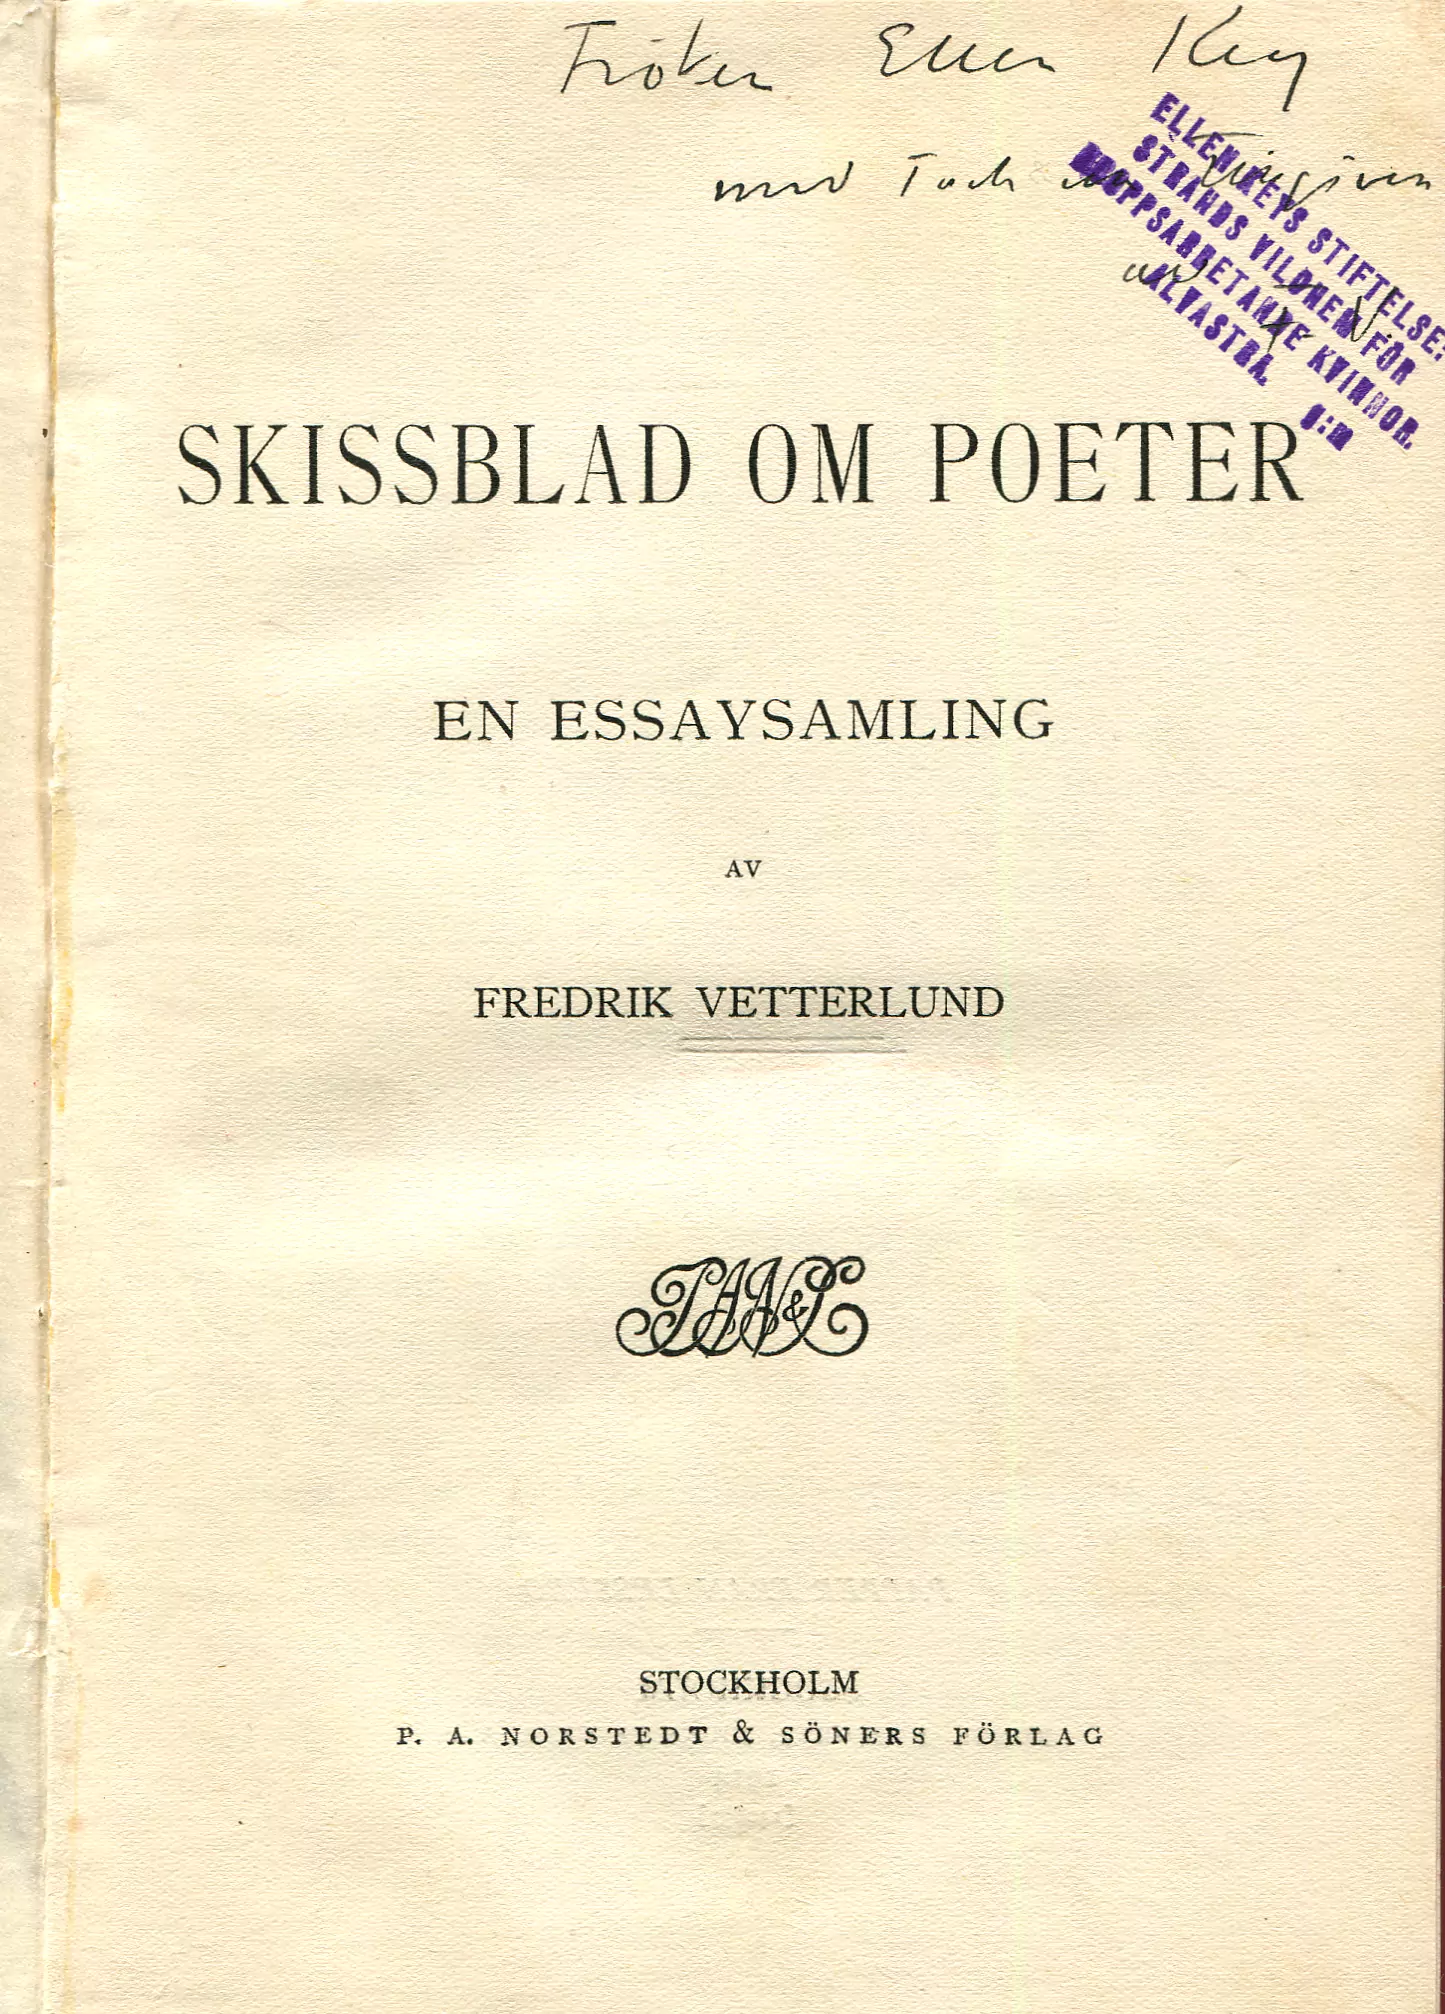 Skissblad om poeter , Stockholm 1914